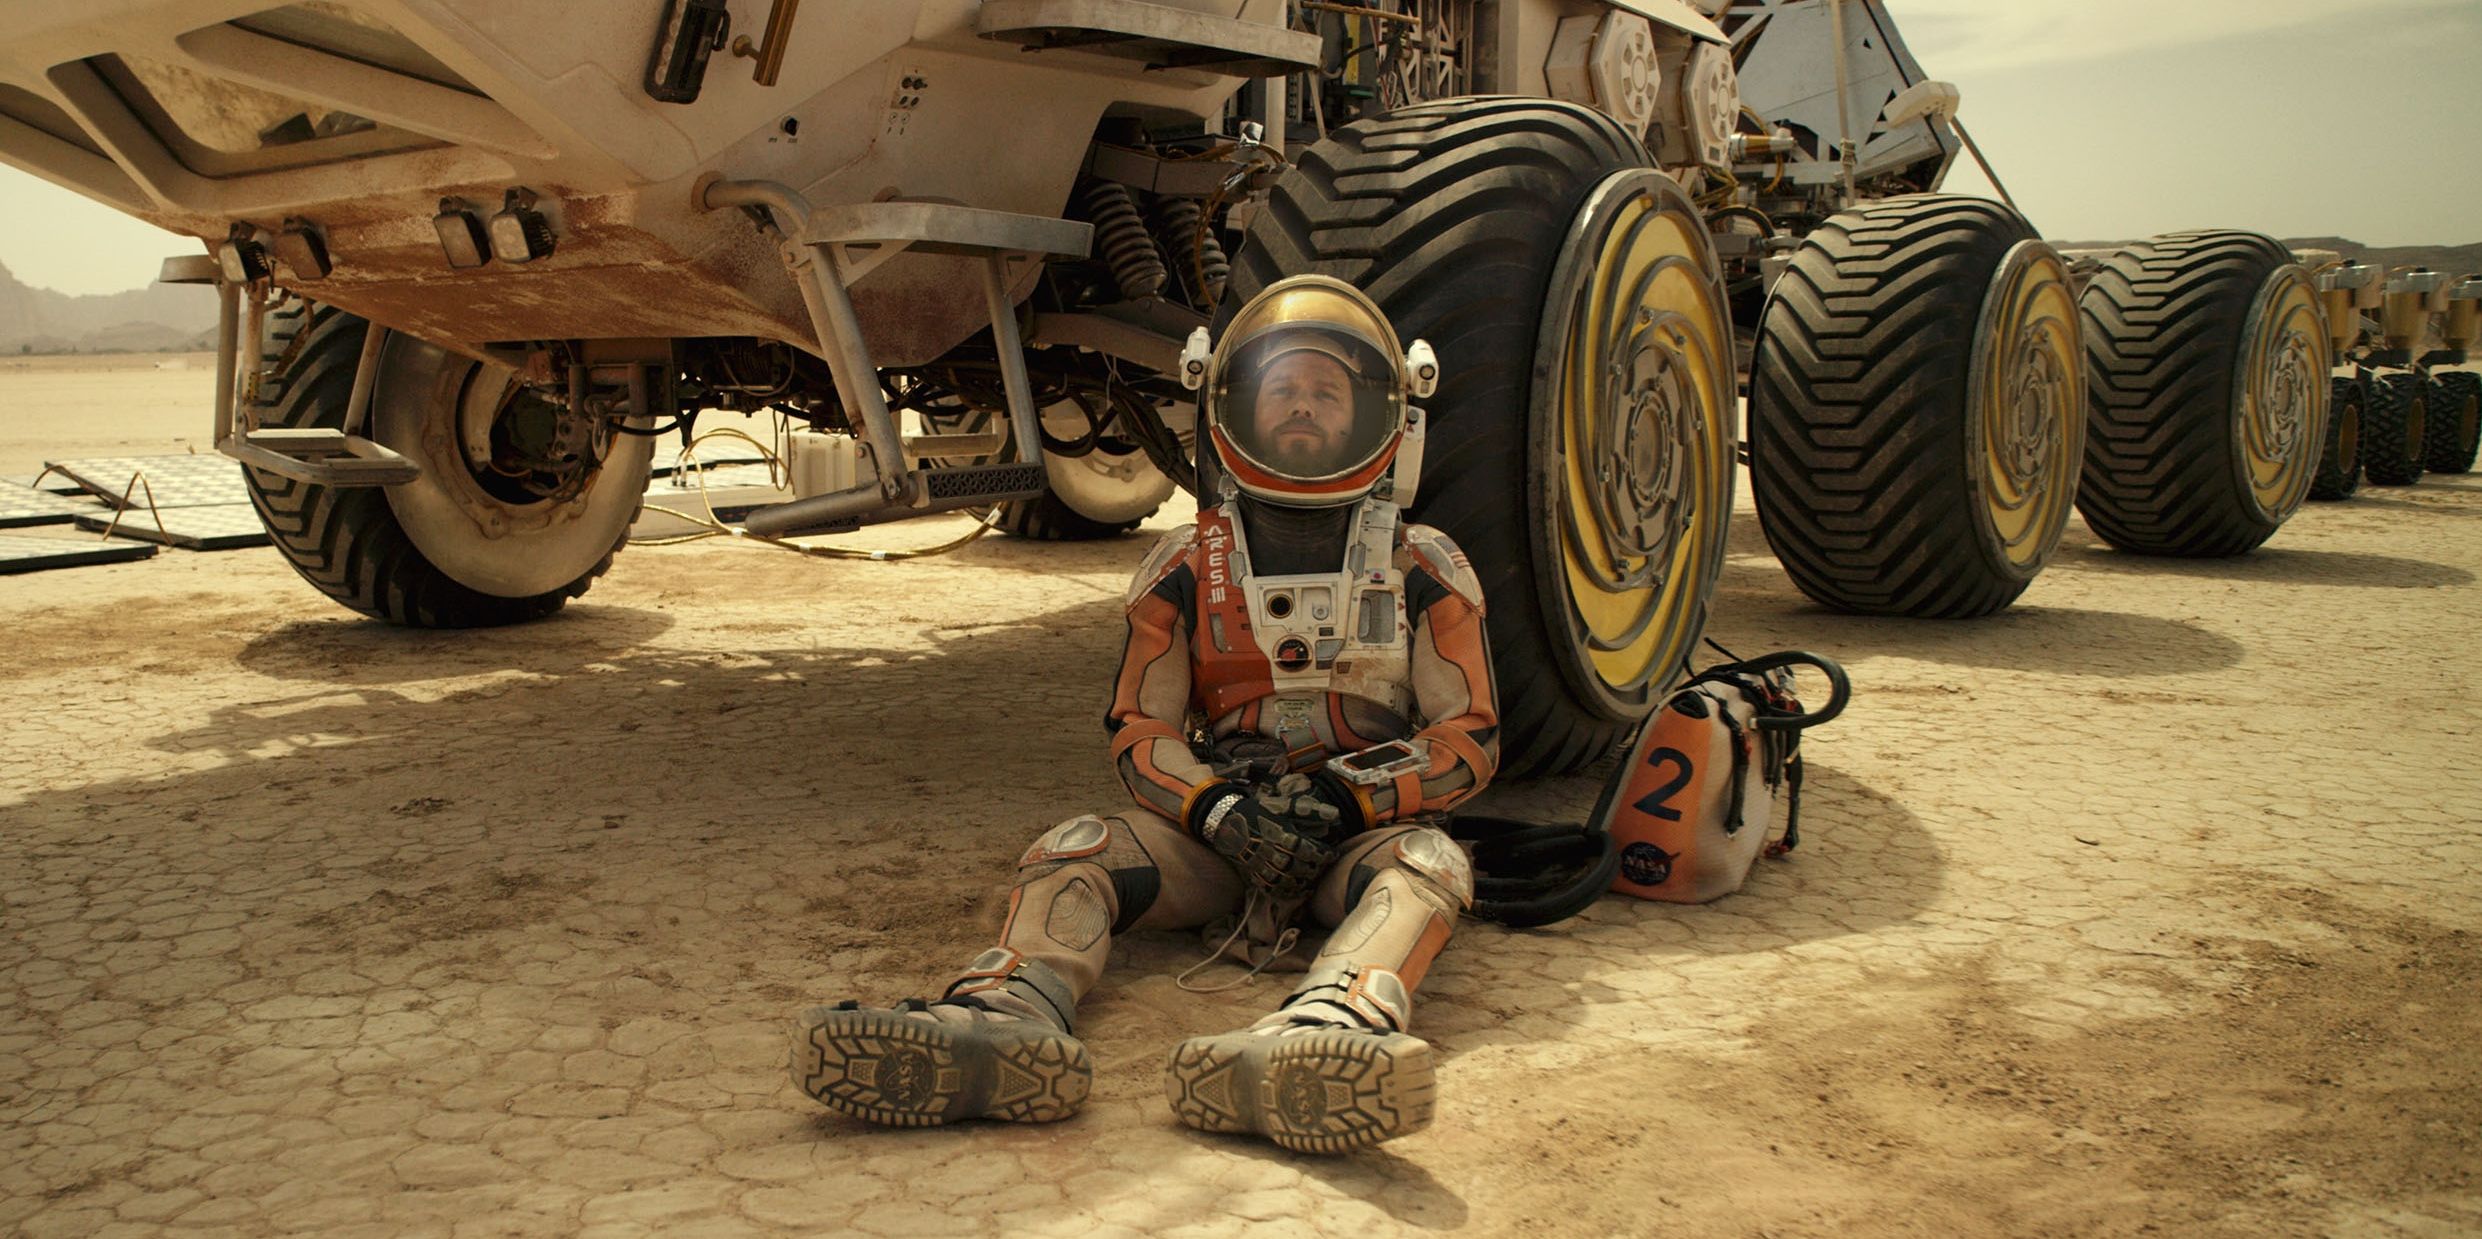 Matt Damon sits around near his space vehicle